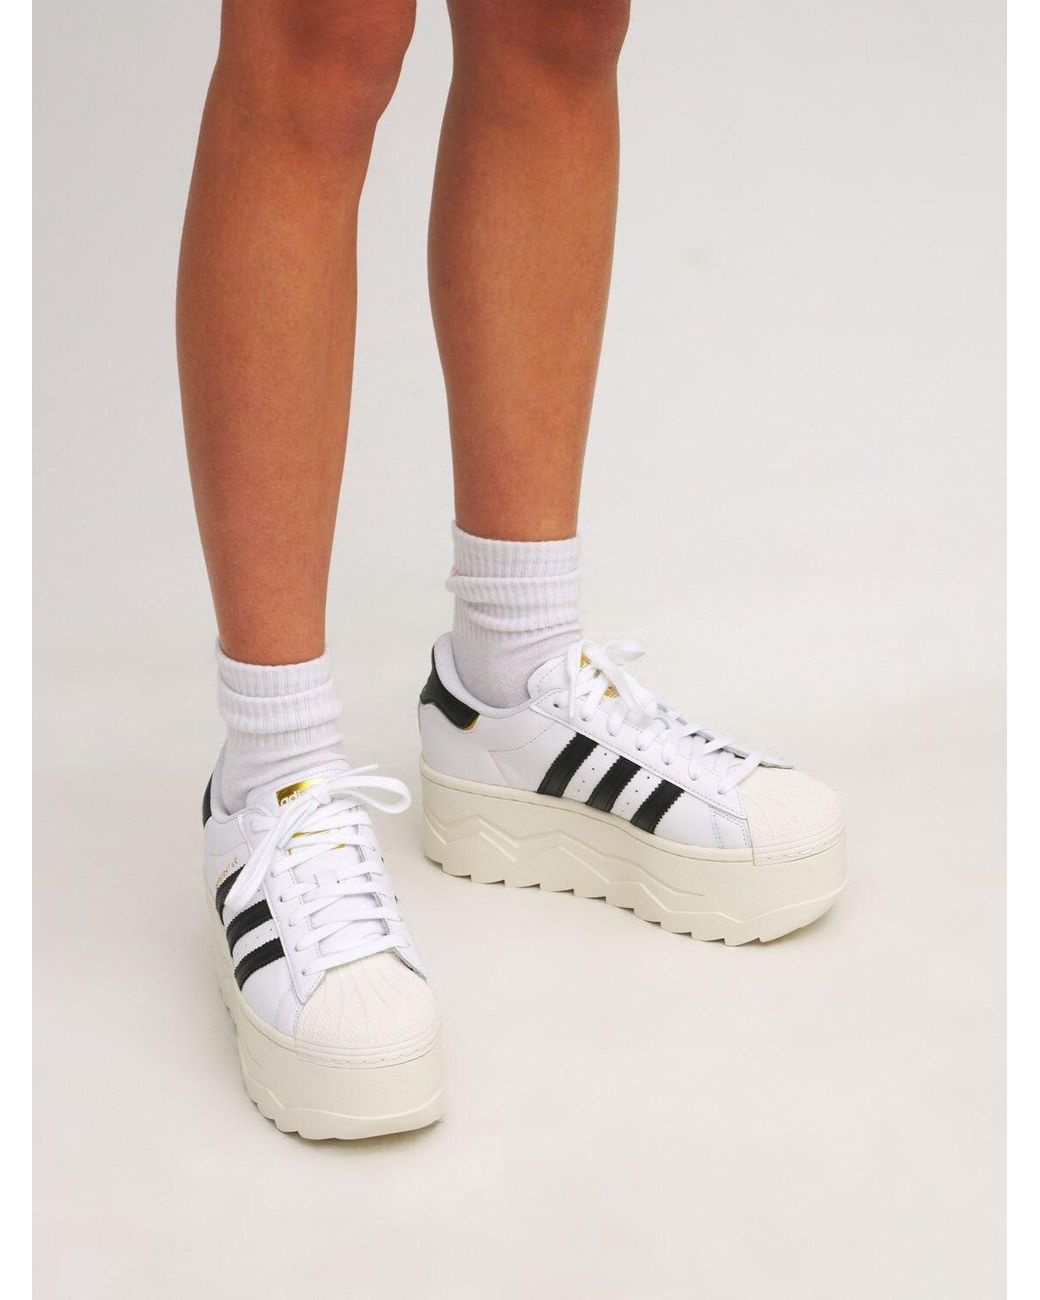 adidas Originals Superstar Platform Sneakers in White | Lyst